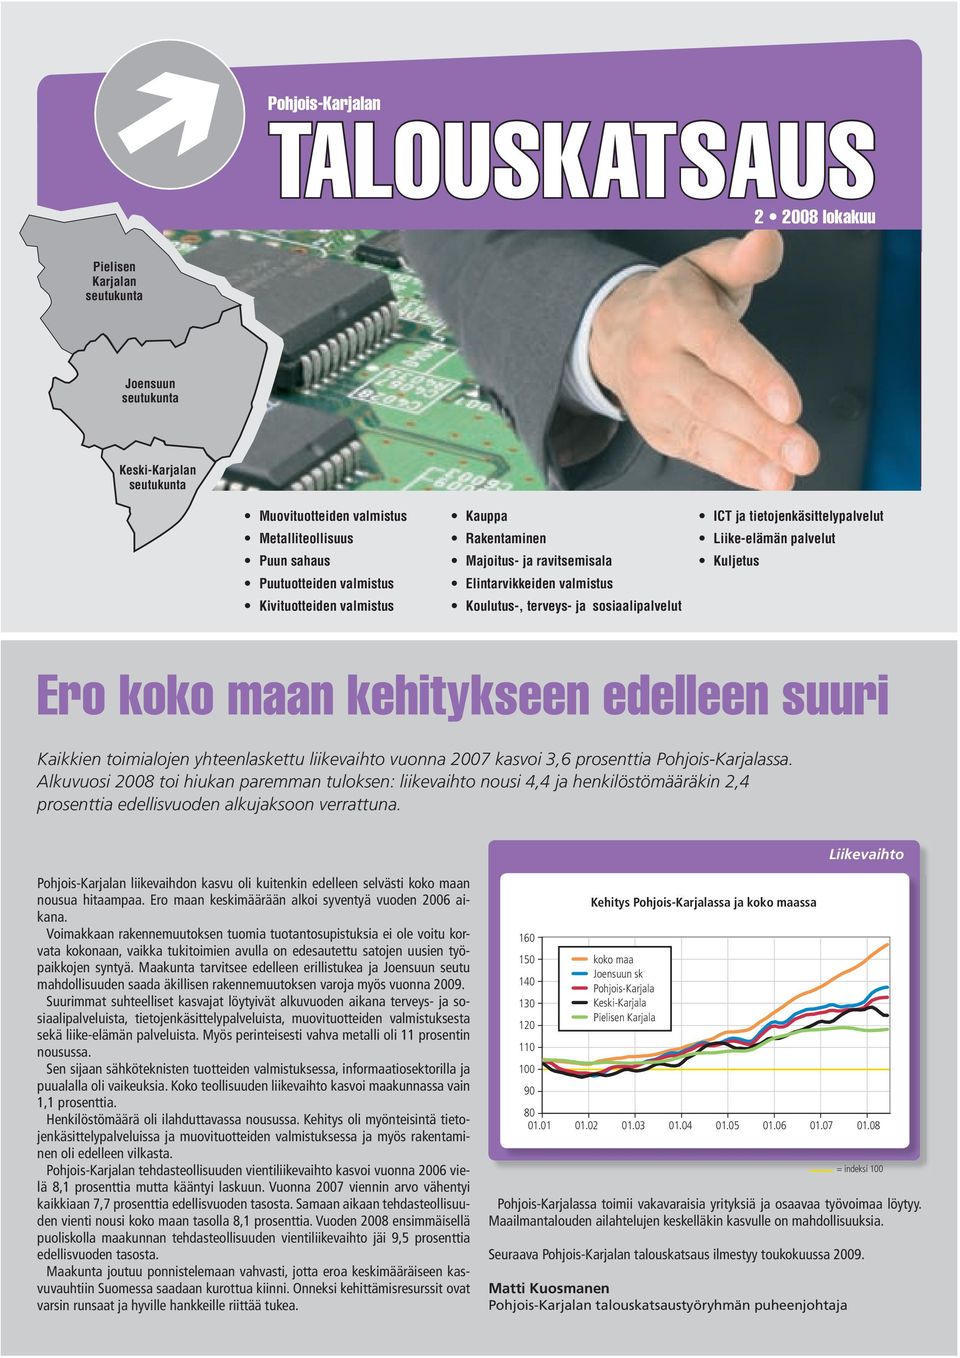 Kuljetus Ero n kehitykseen edelleen suuri Kaikkien toimialojen yhteenlaskettu liikevaihto vuonna 27 kasvoi 3,6 prosenttia Pohjois-Karjalassa.